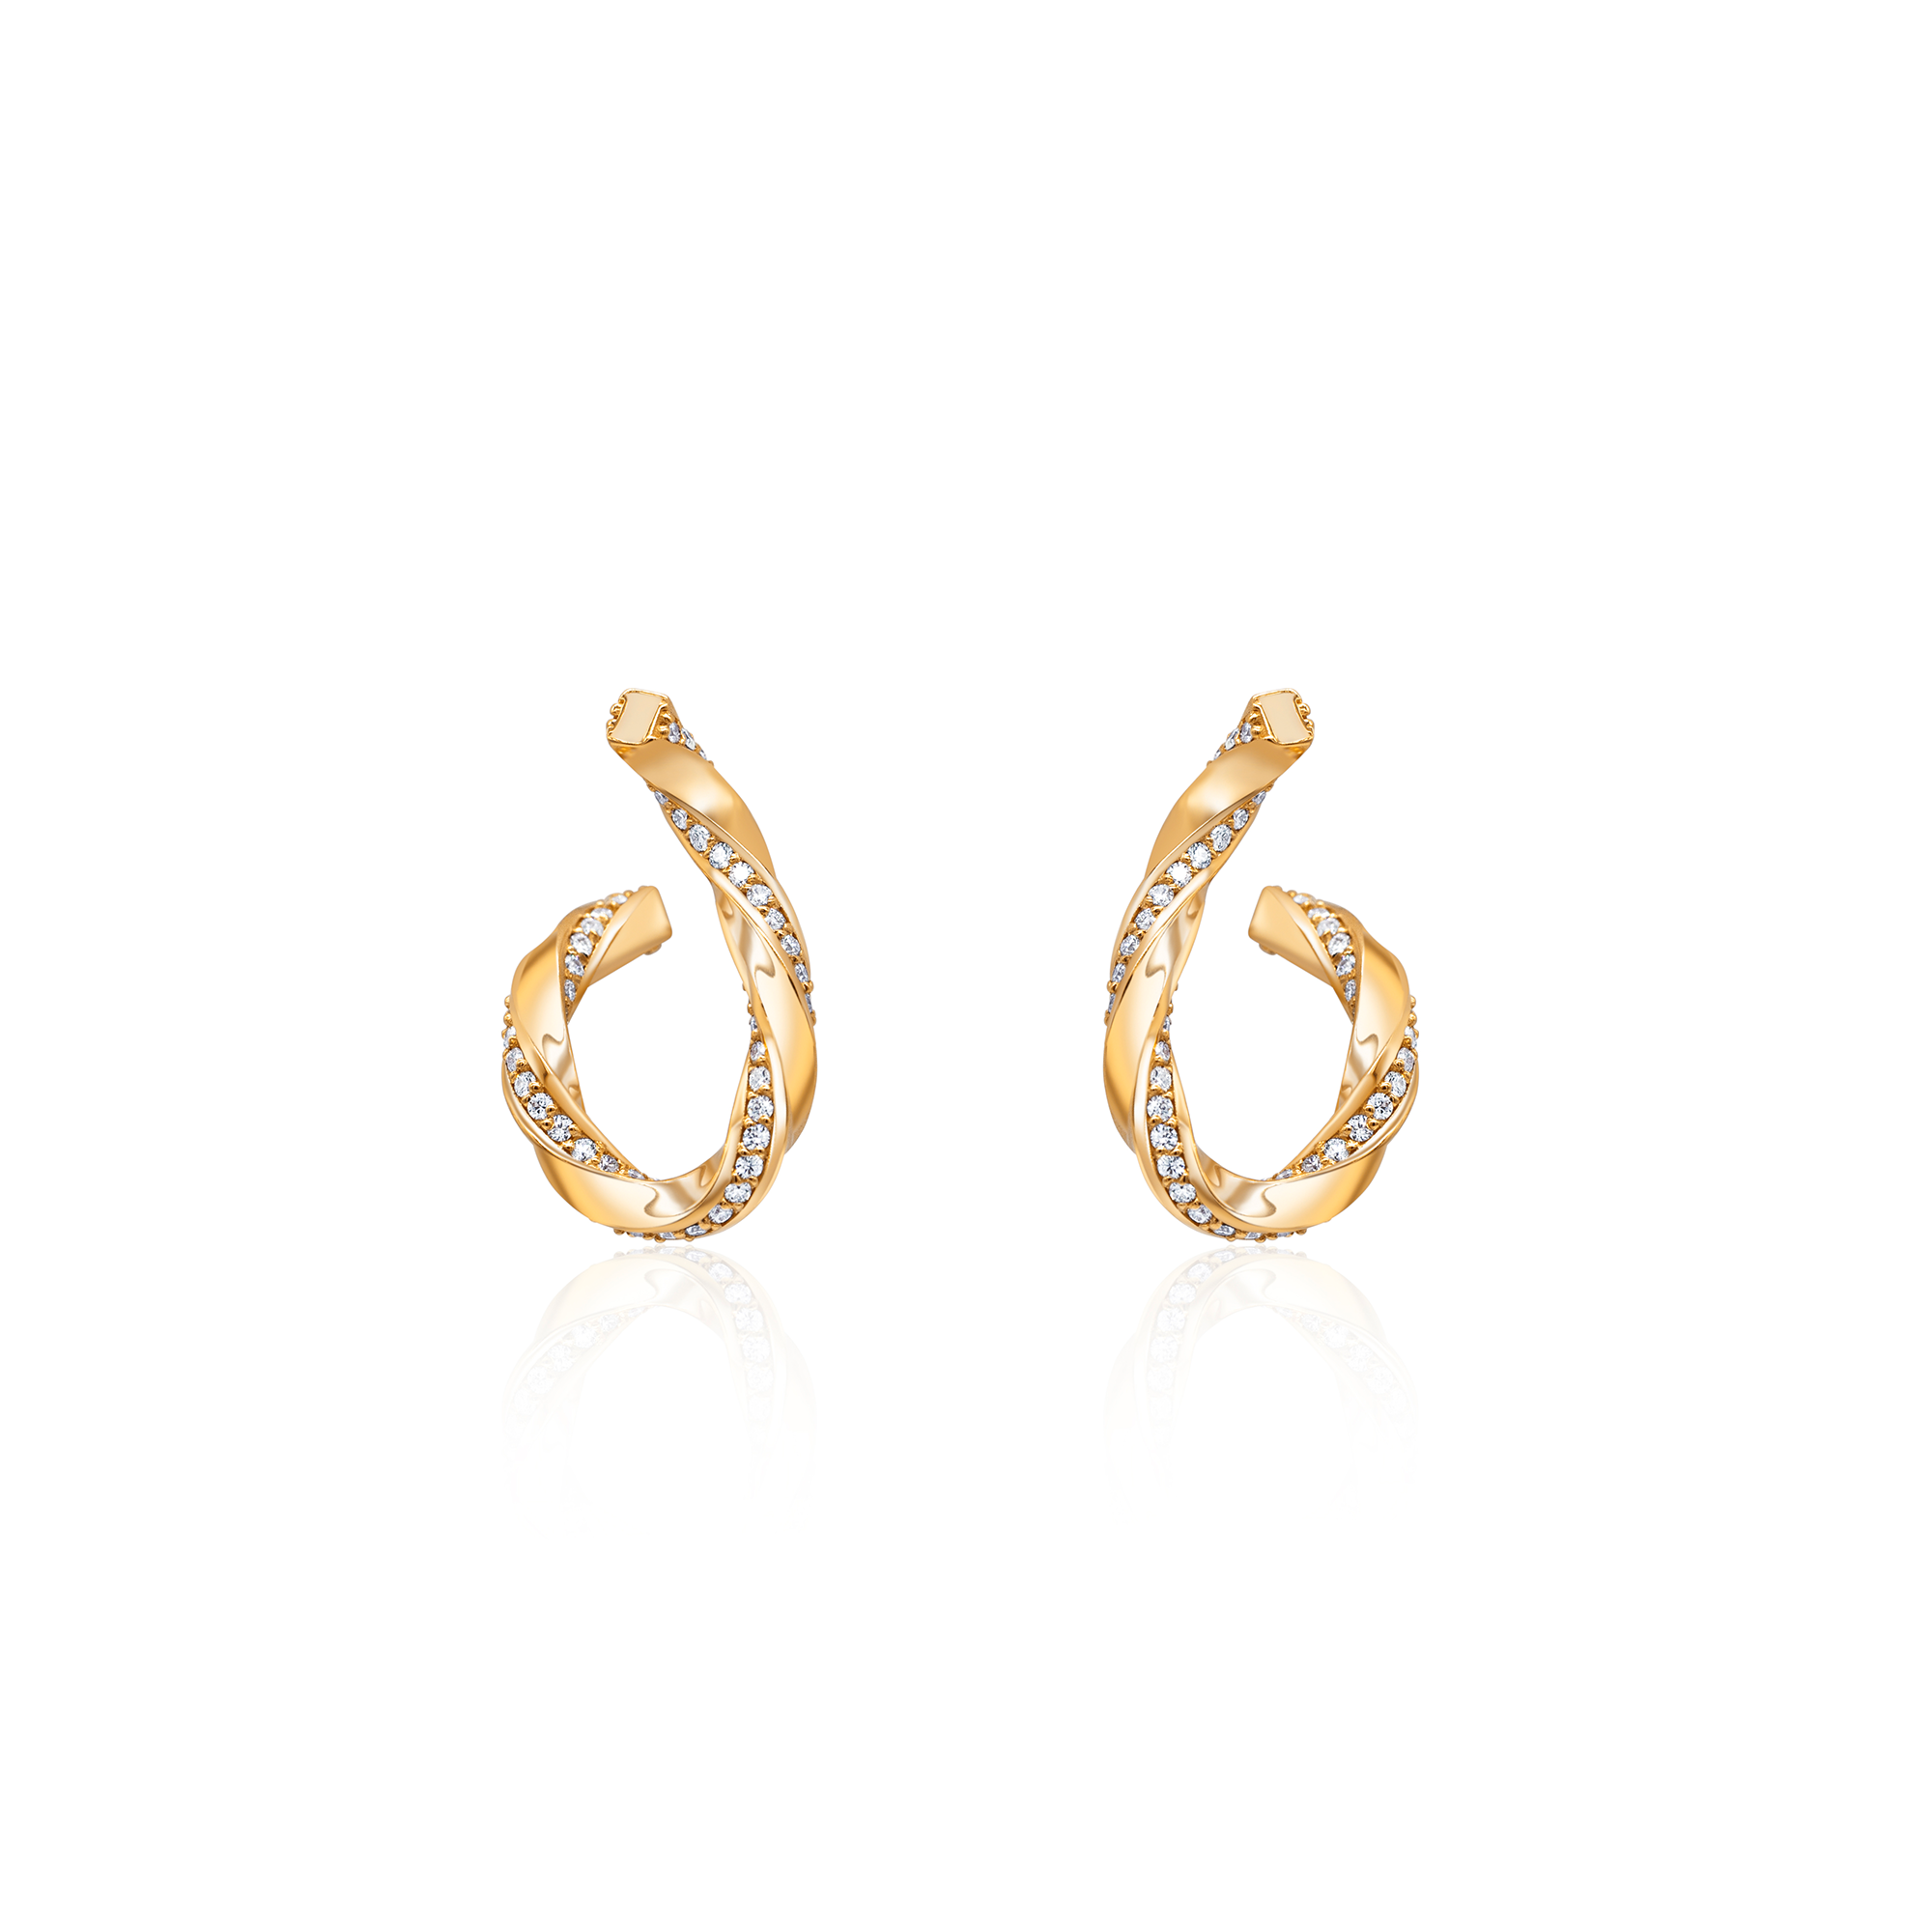 14K yellow gold diamond earrings eternity earrings wedding jewelry